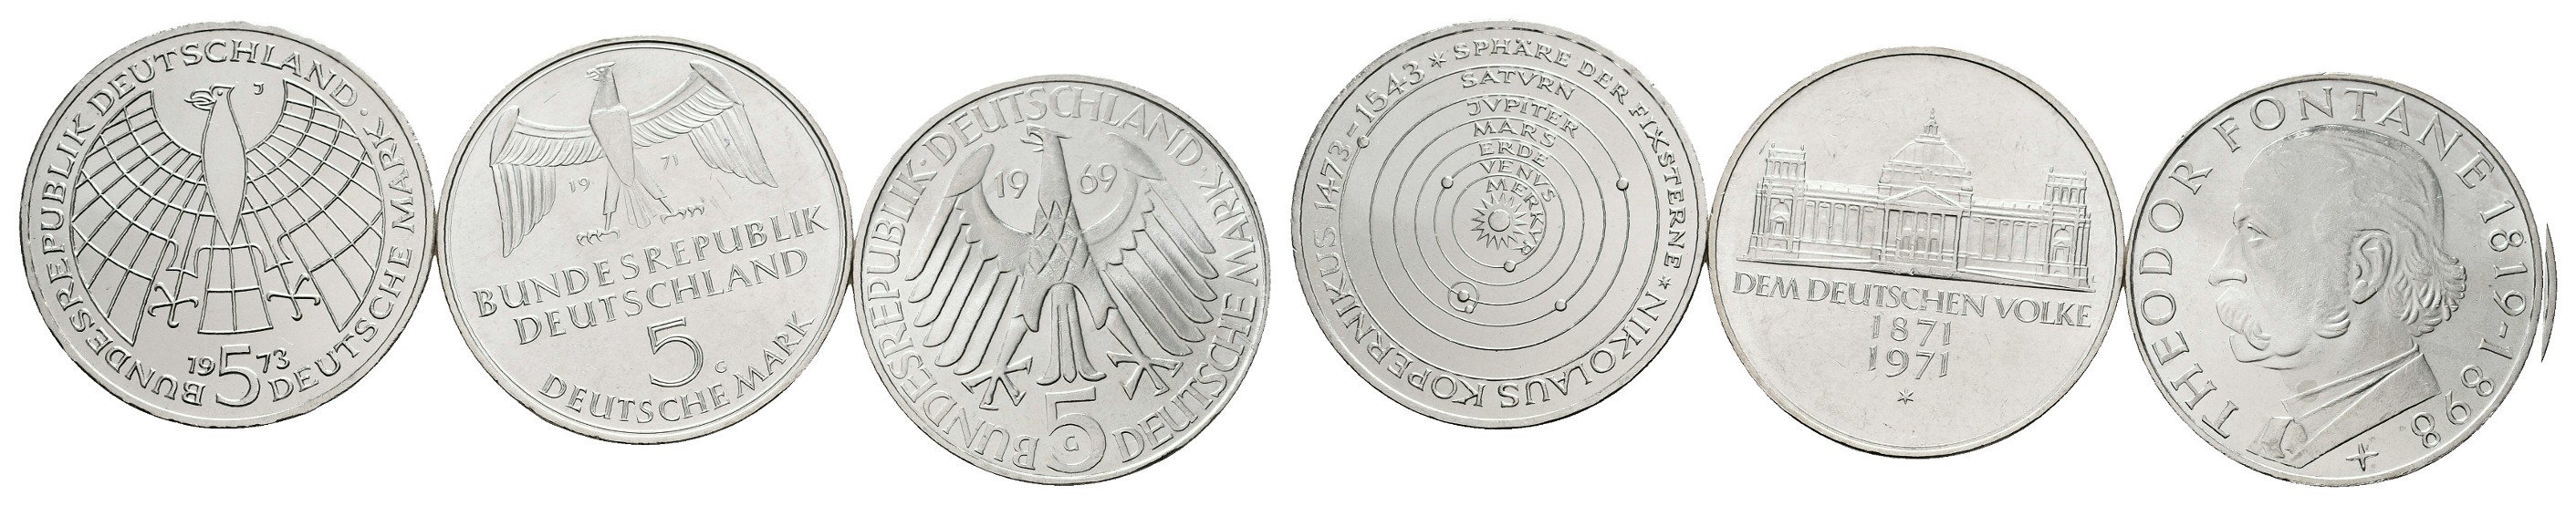  MGS Zypern KMS Kursmünzensatz 2008 Euroländer 3,88 Euro in Hardcover   